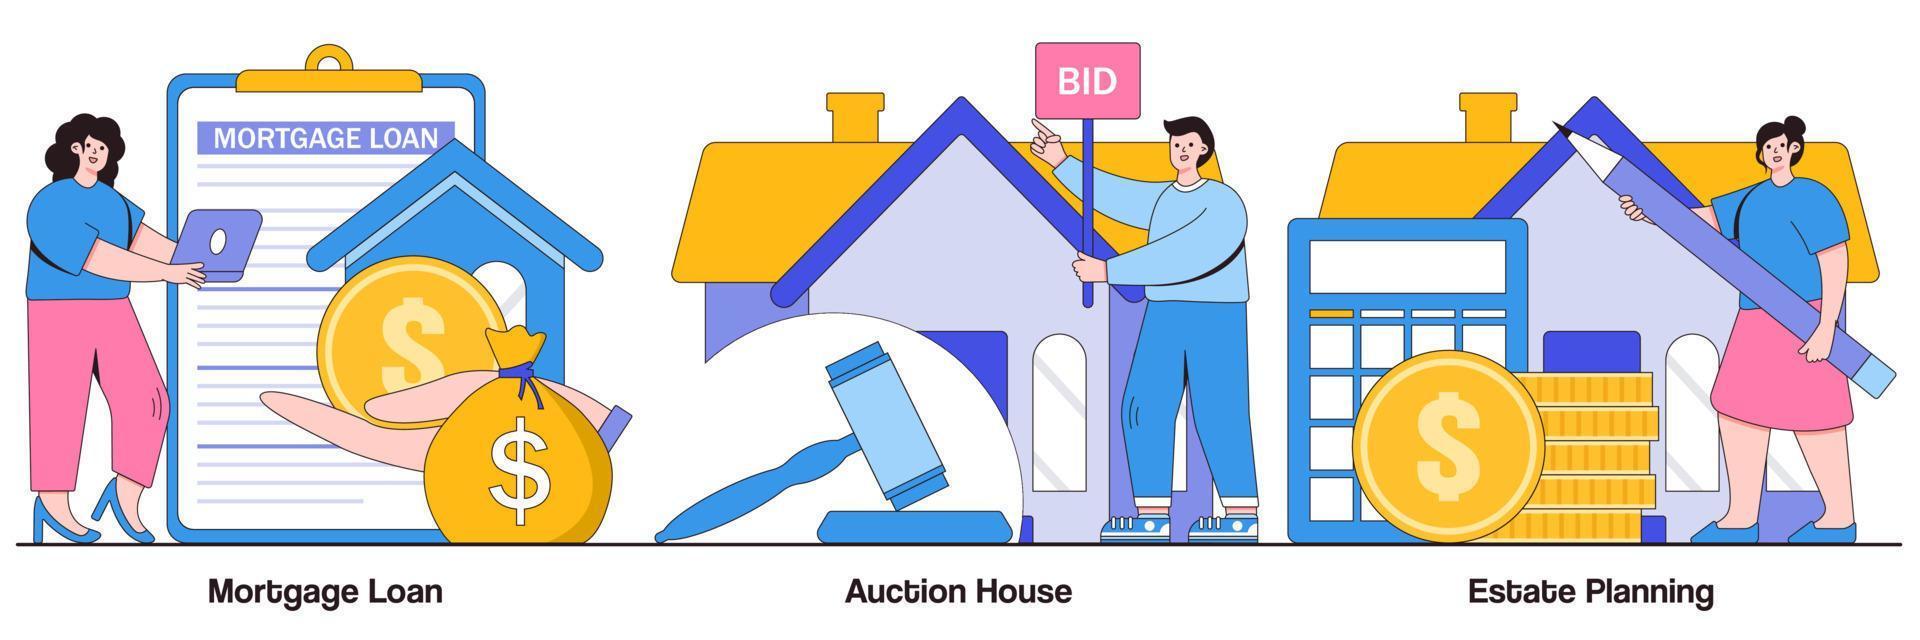 empréstimo hipotecário, casa de leilões e pacote ilustrado de planejamento imobiliário vetor